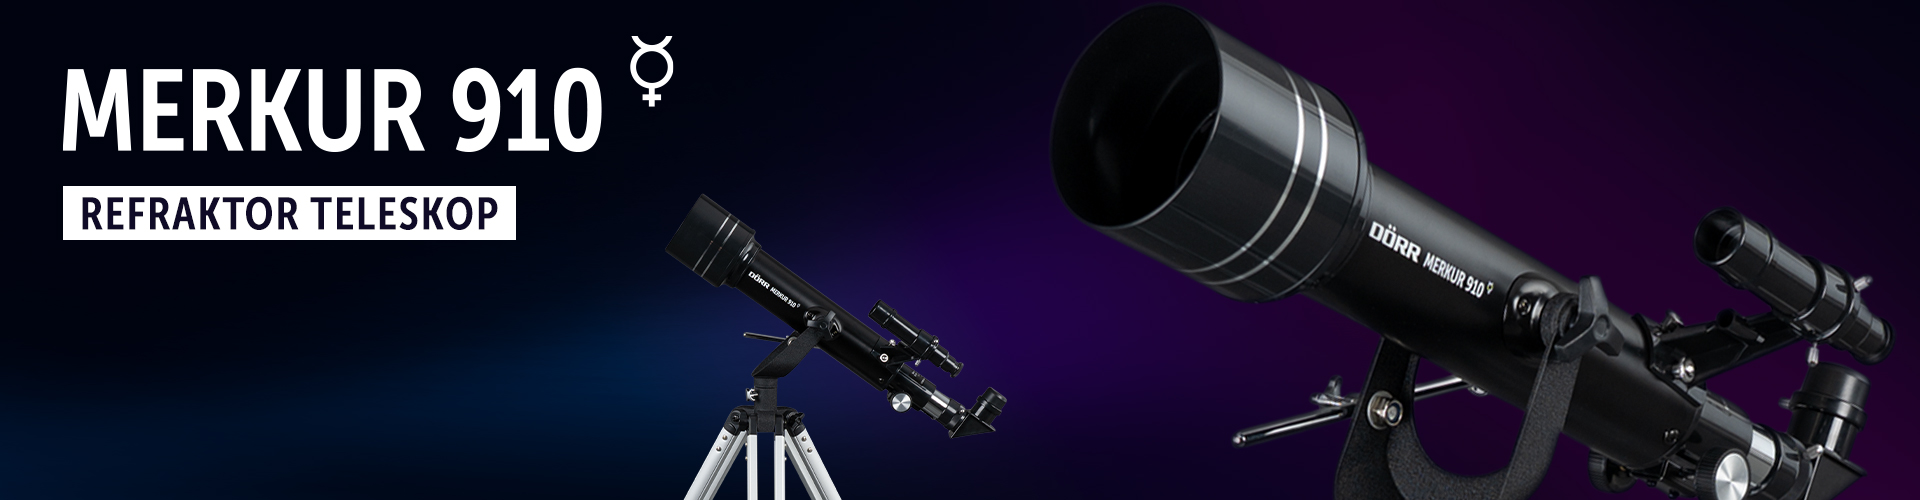 MERKUR 910 Refraktor Teleskop | DÖRR